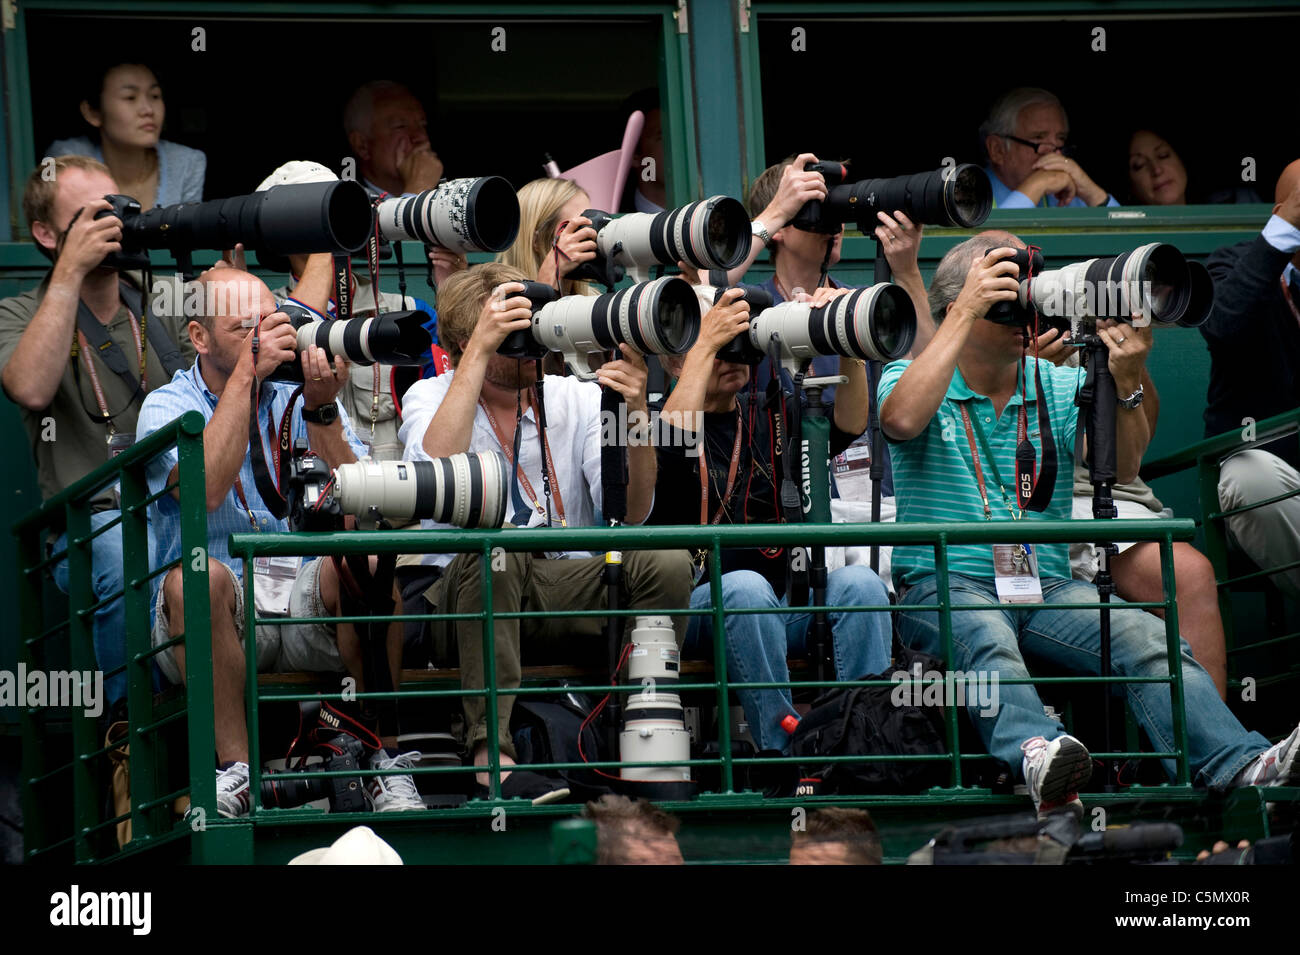 Travail des photographes sur le Court central lors de la Tennis de Wimbledon 2011 Banque D'Images